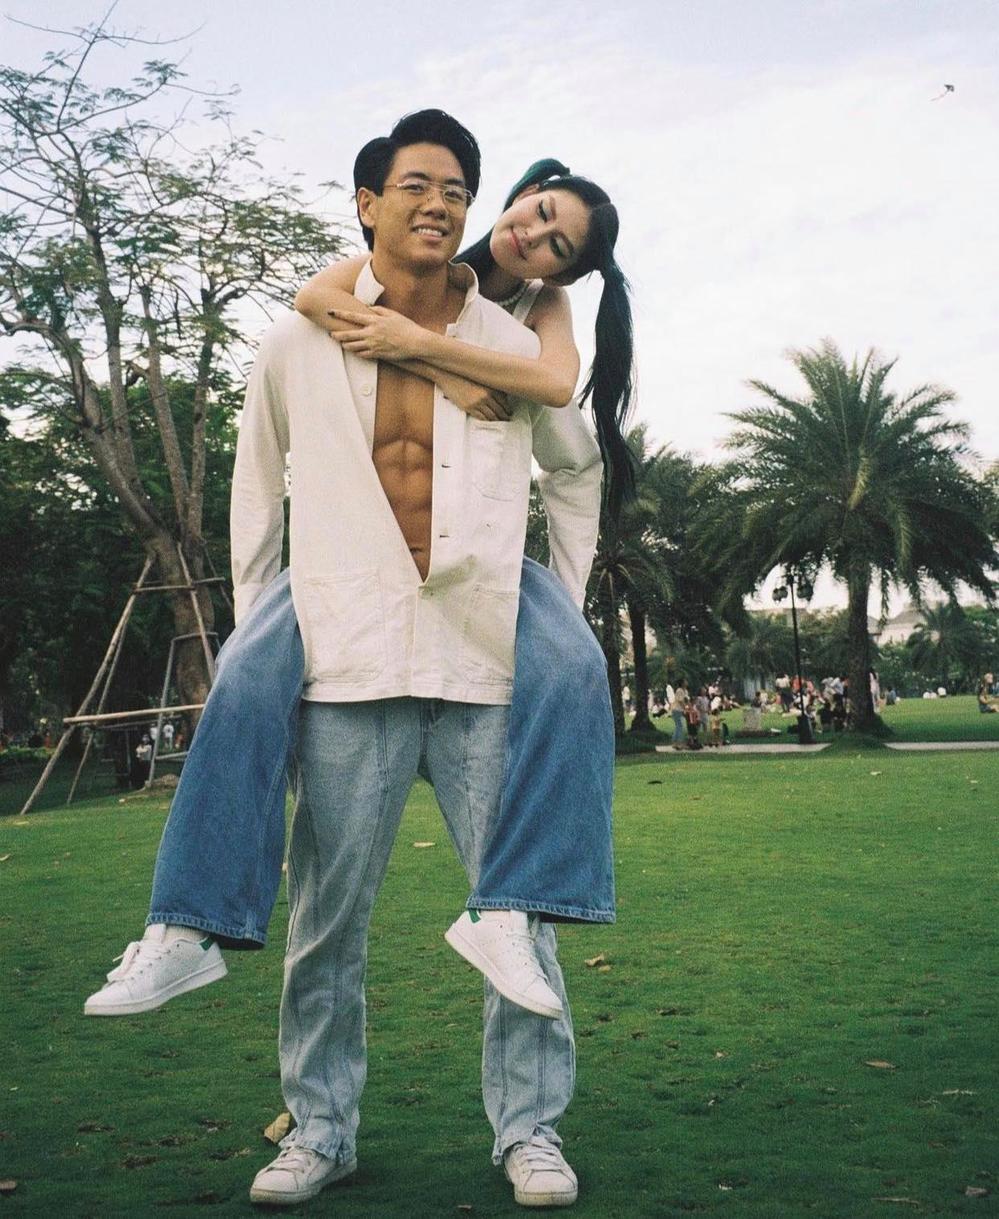  
Người mẫu và bạn trai Michael Trương. (Ảnh: IGNV)